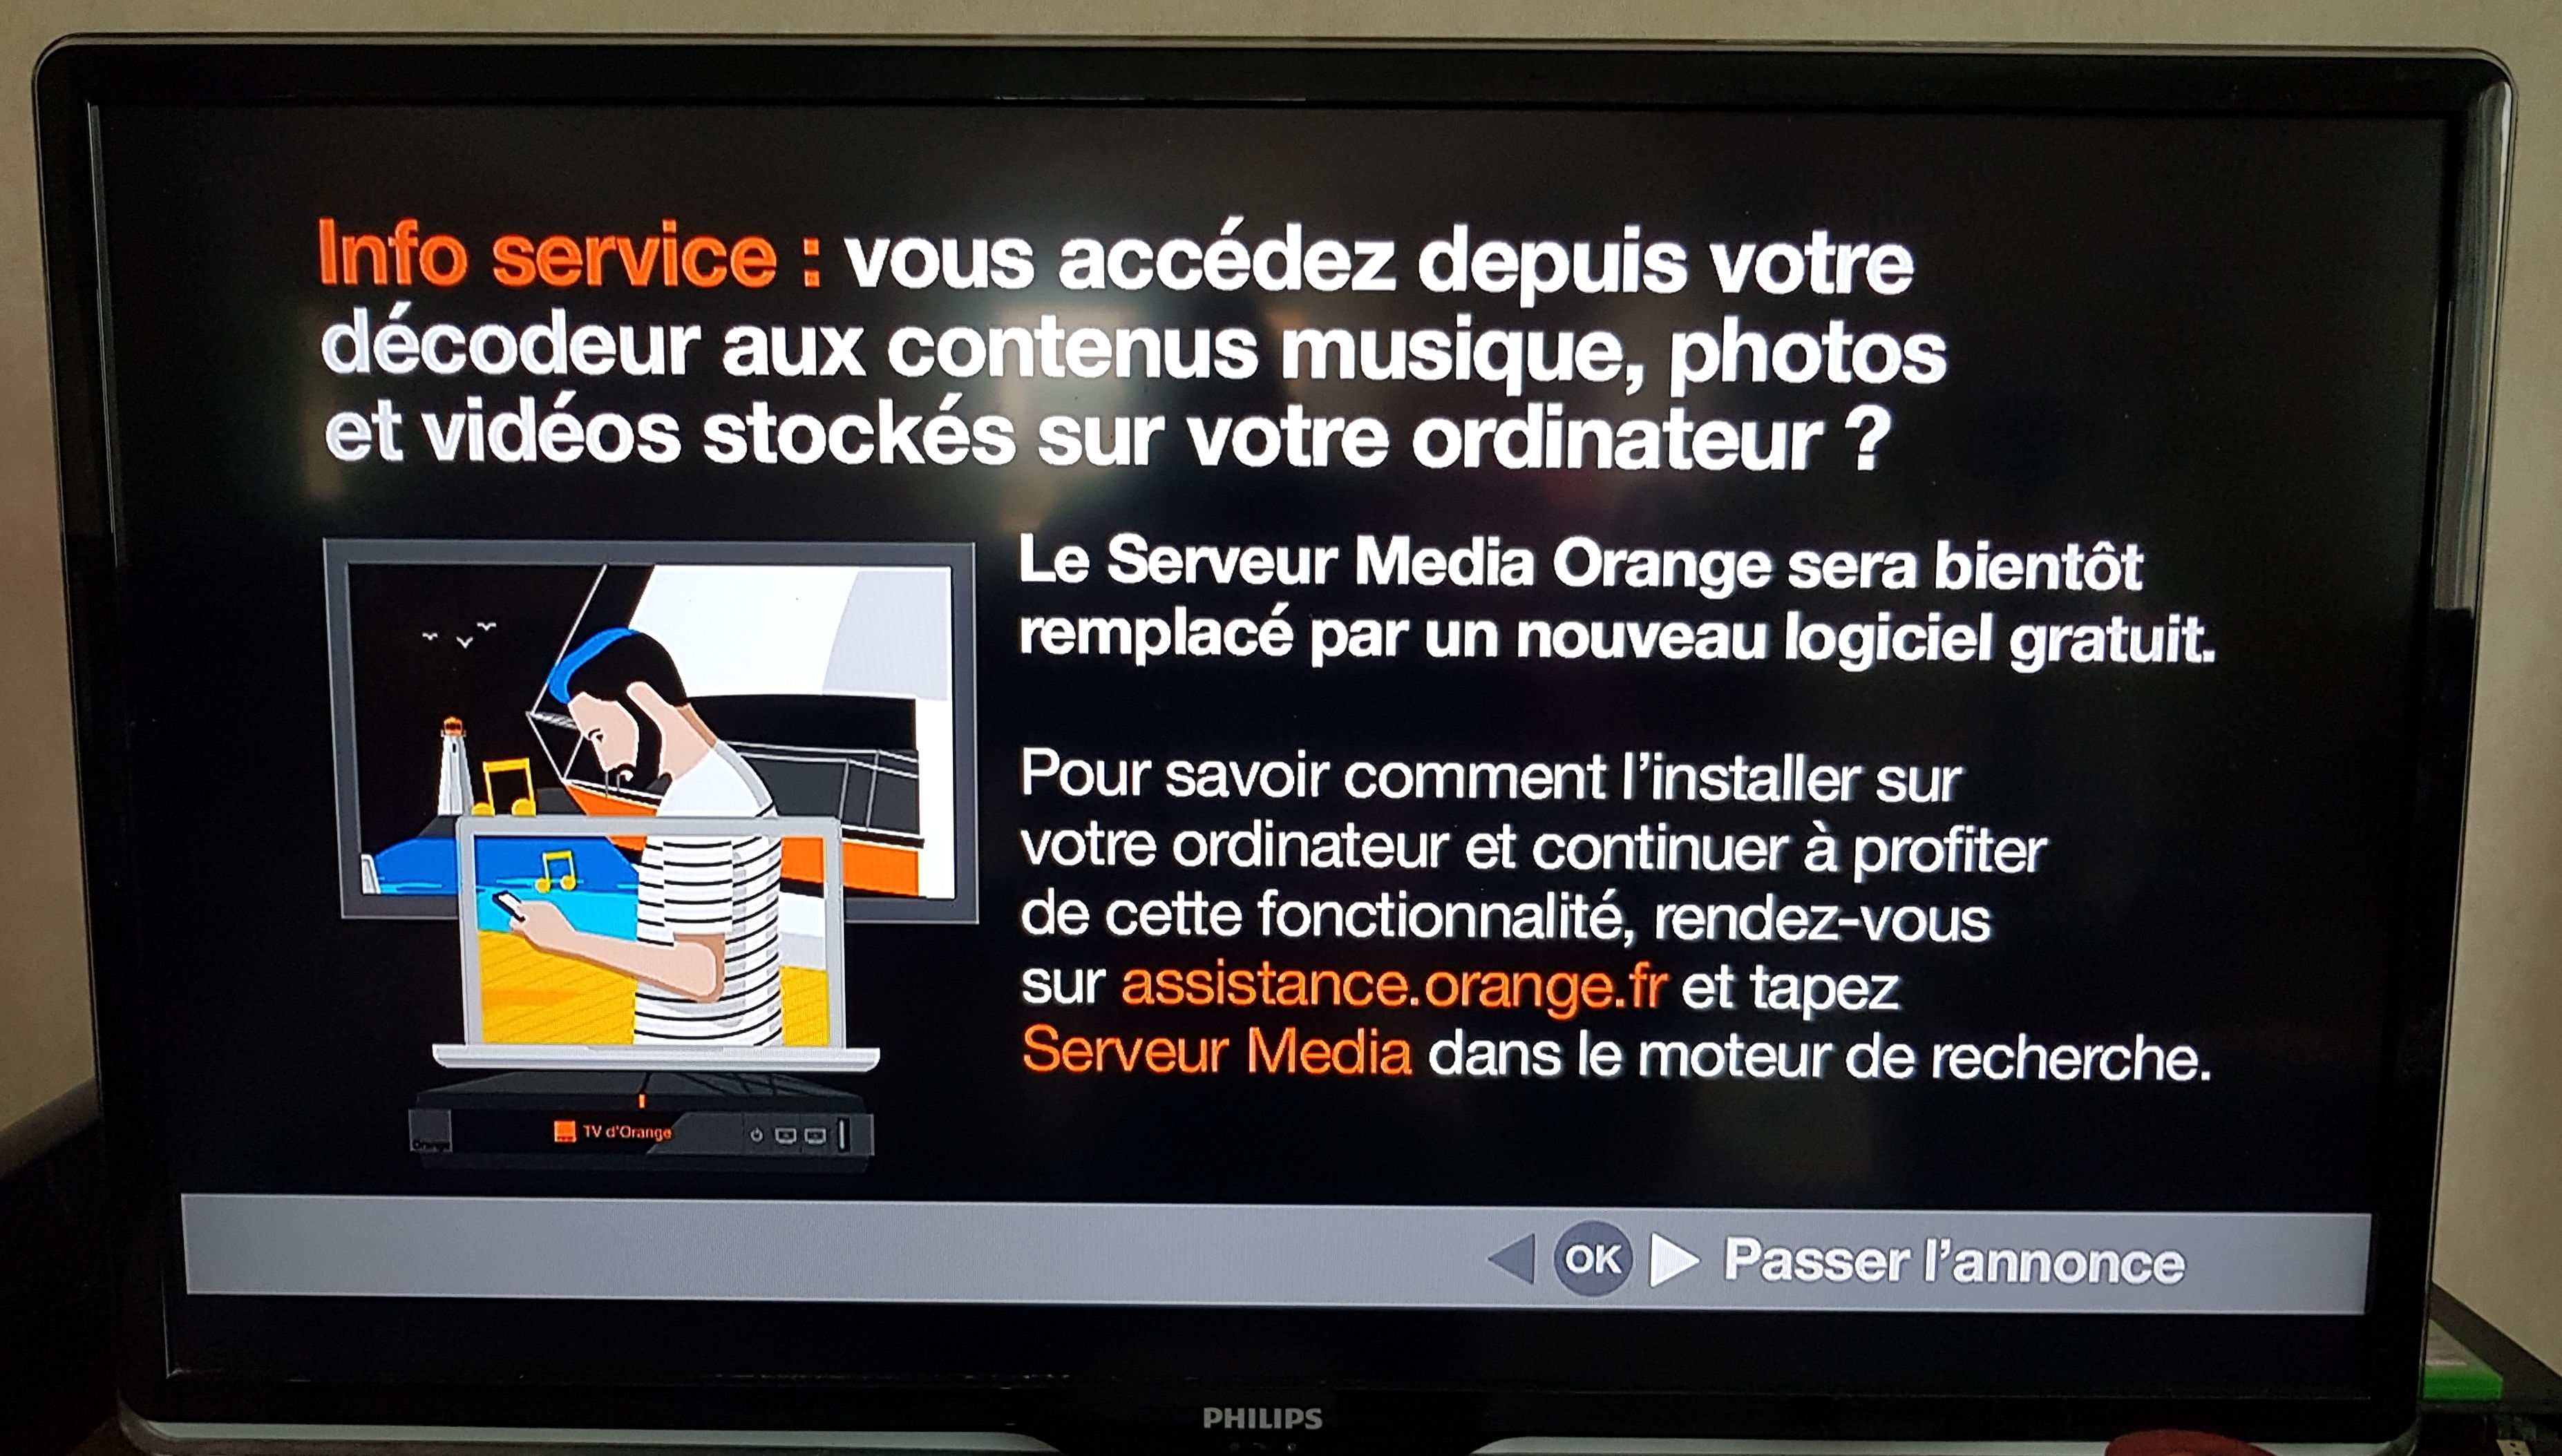 Arrivée nouveau serveur media sur livebox 4 TV ? - Communauté Orange